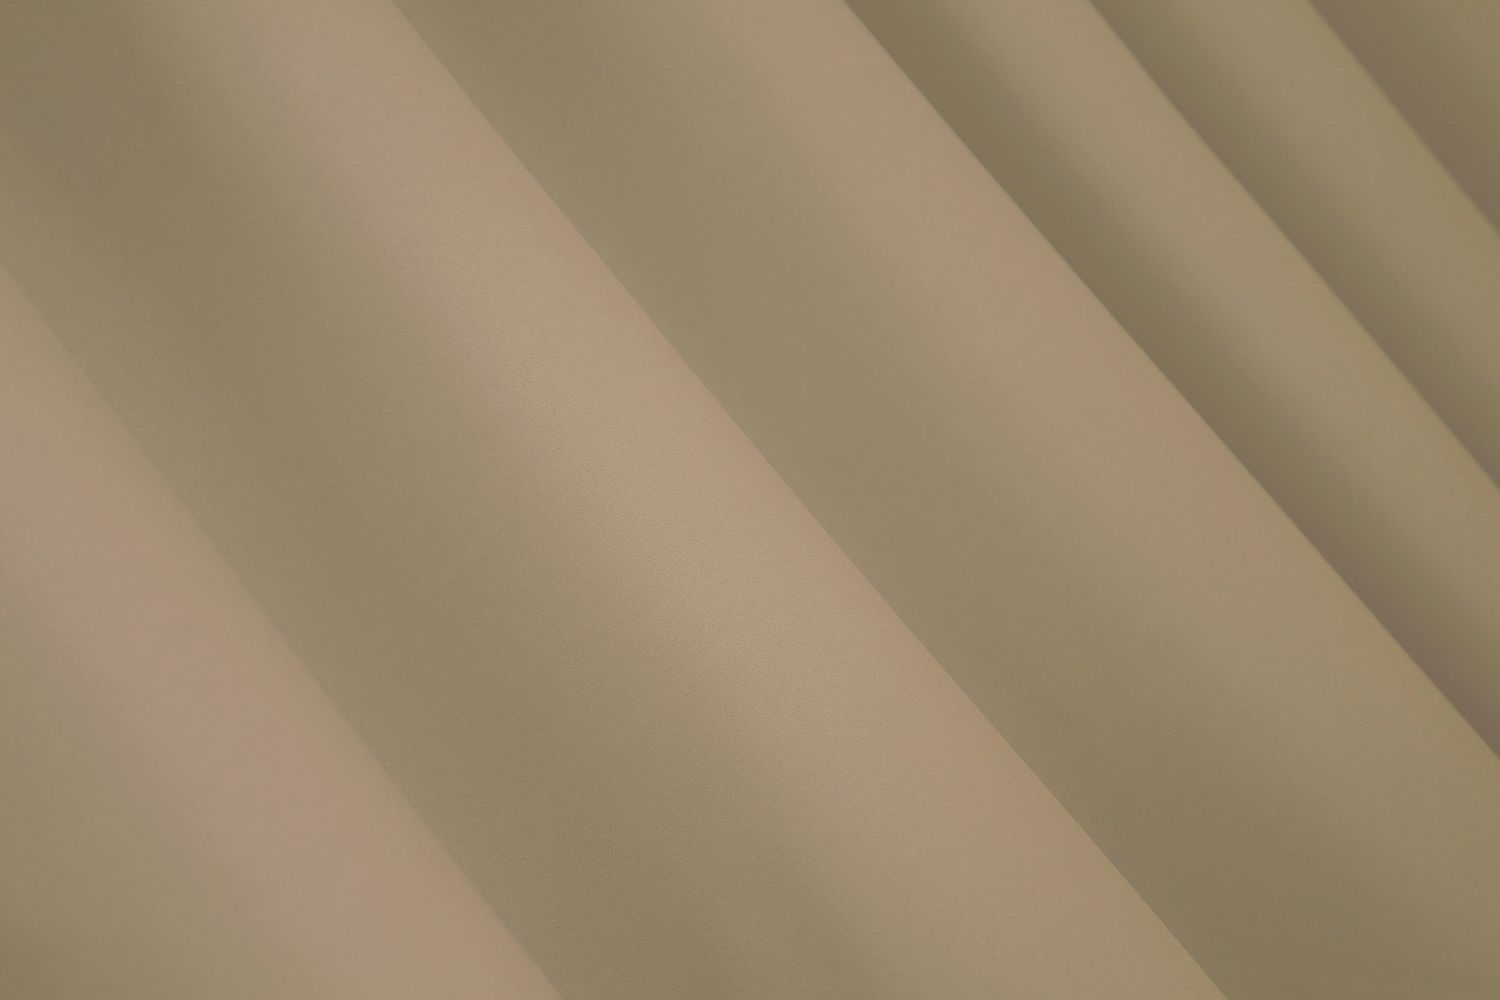 Комплект штор із тканини блекаут, колекція "Midnight" колір беж 1232ш, Бежевий, Комплект штор (2 шт. 1,5х2,9м.), Класичні, Без ламбрекена, Довгі, 1,5 м., 2,9 м., 150, 290, 2 - 3 м., В комплекті 2 шт., Тасьма